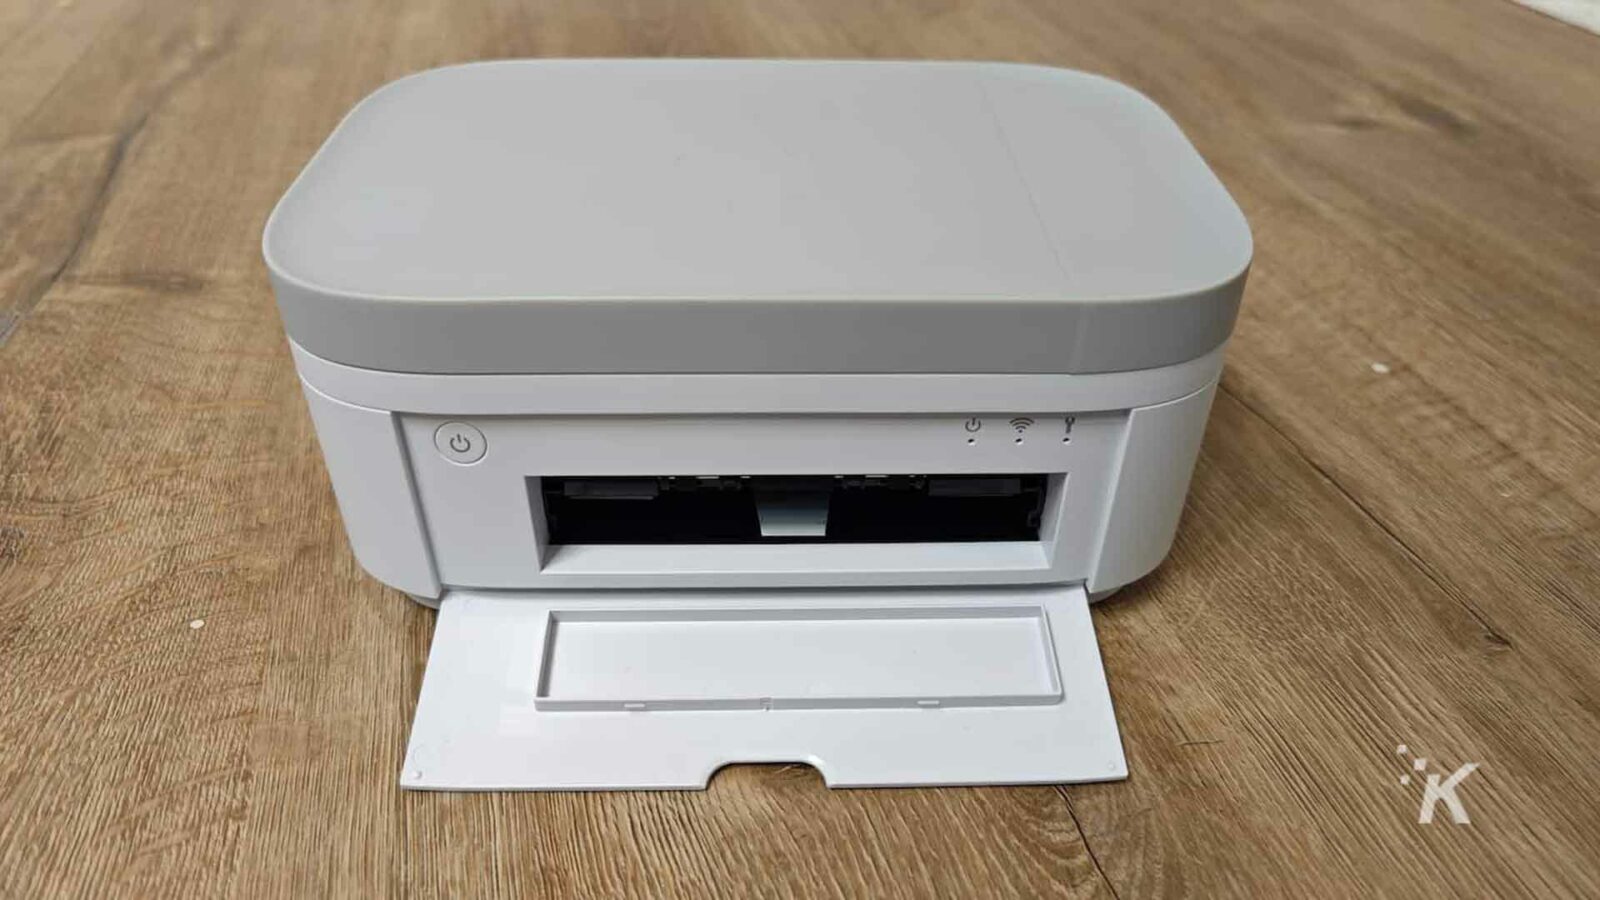 HP printer white on floor